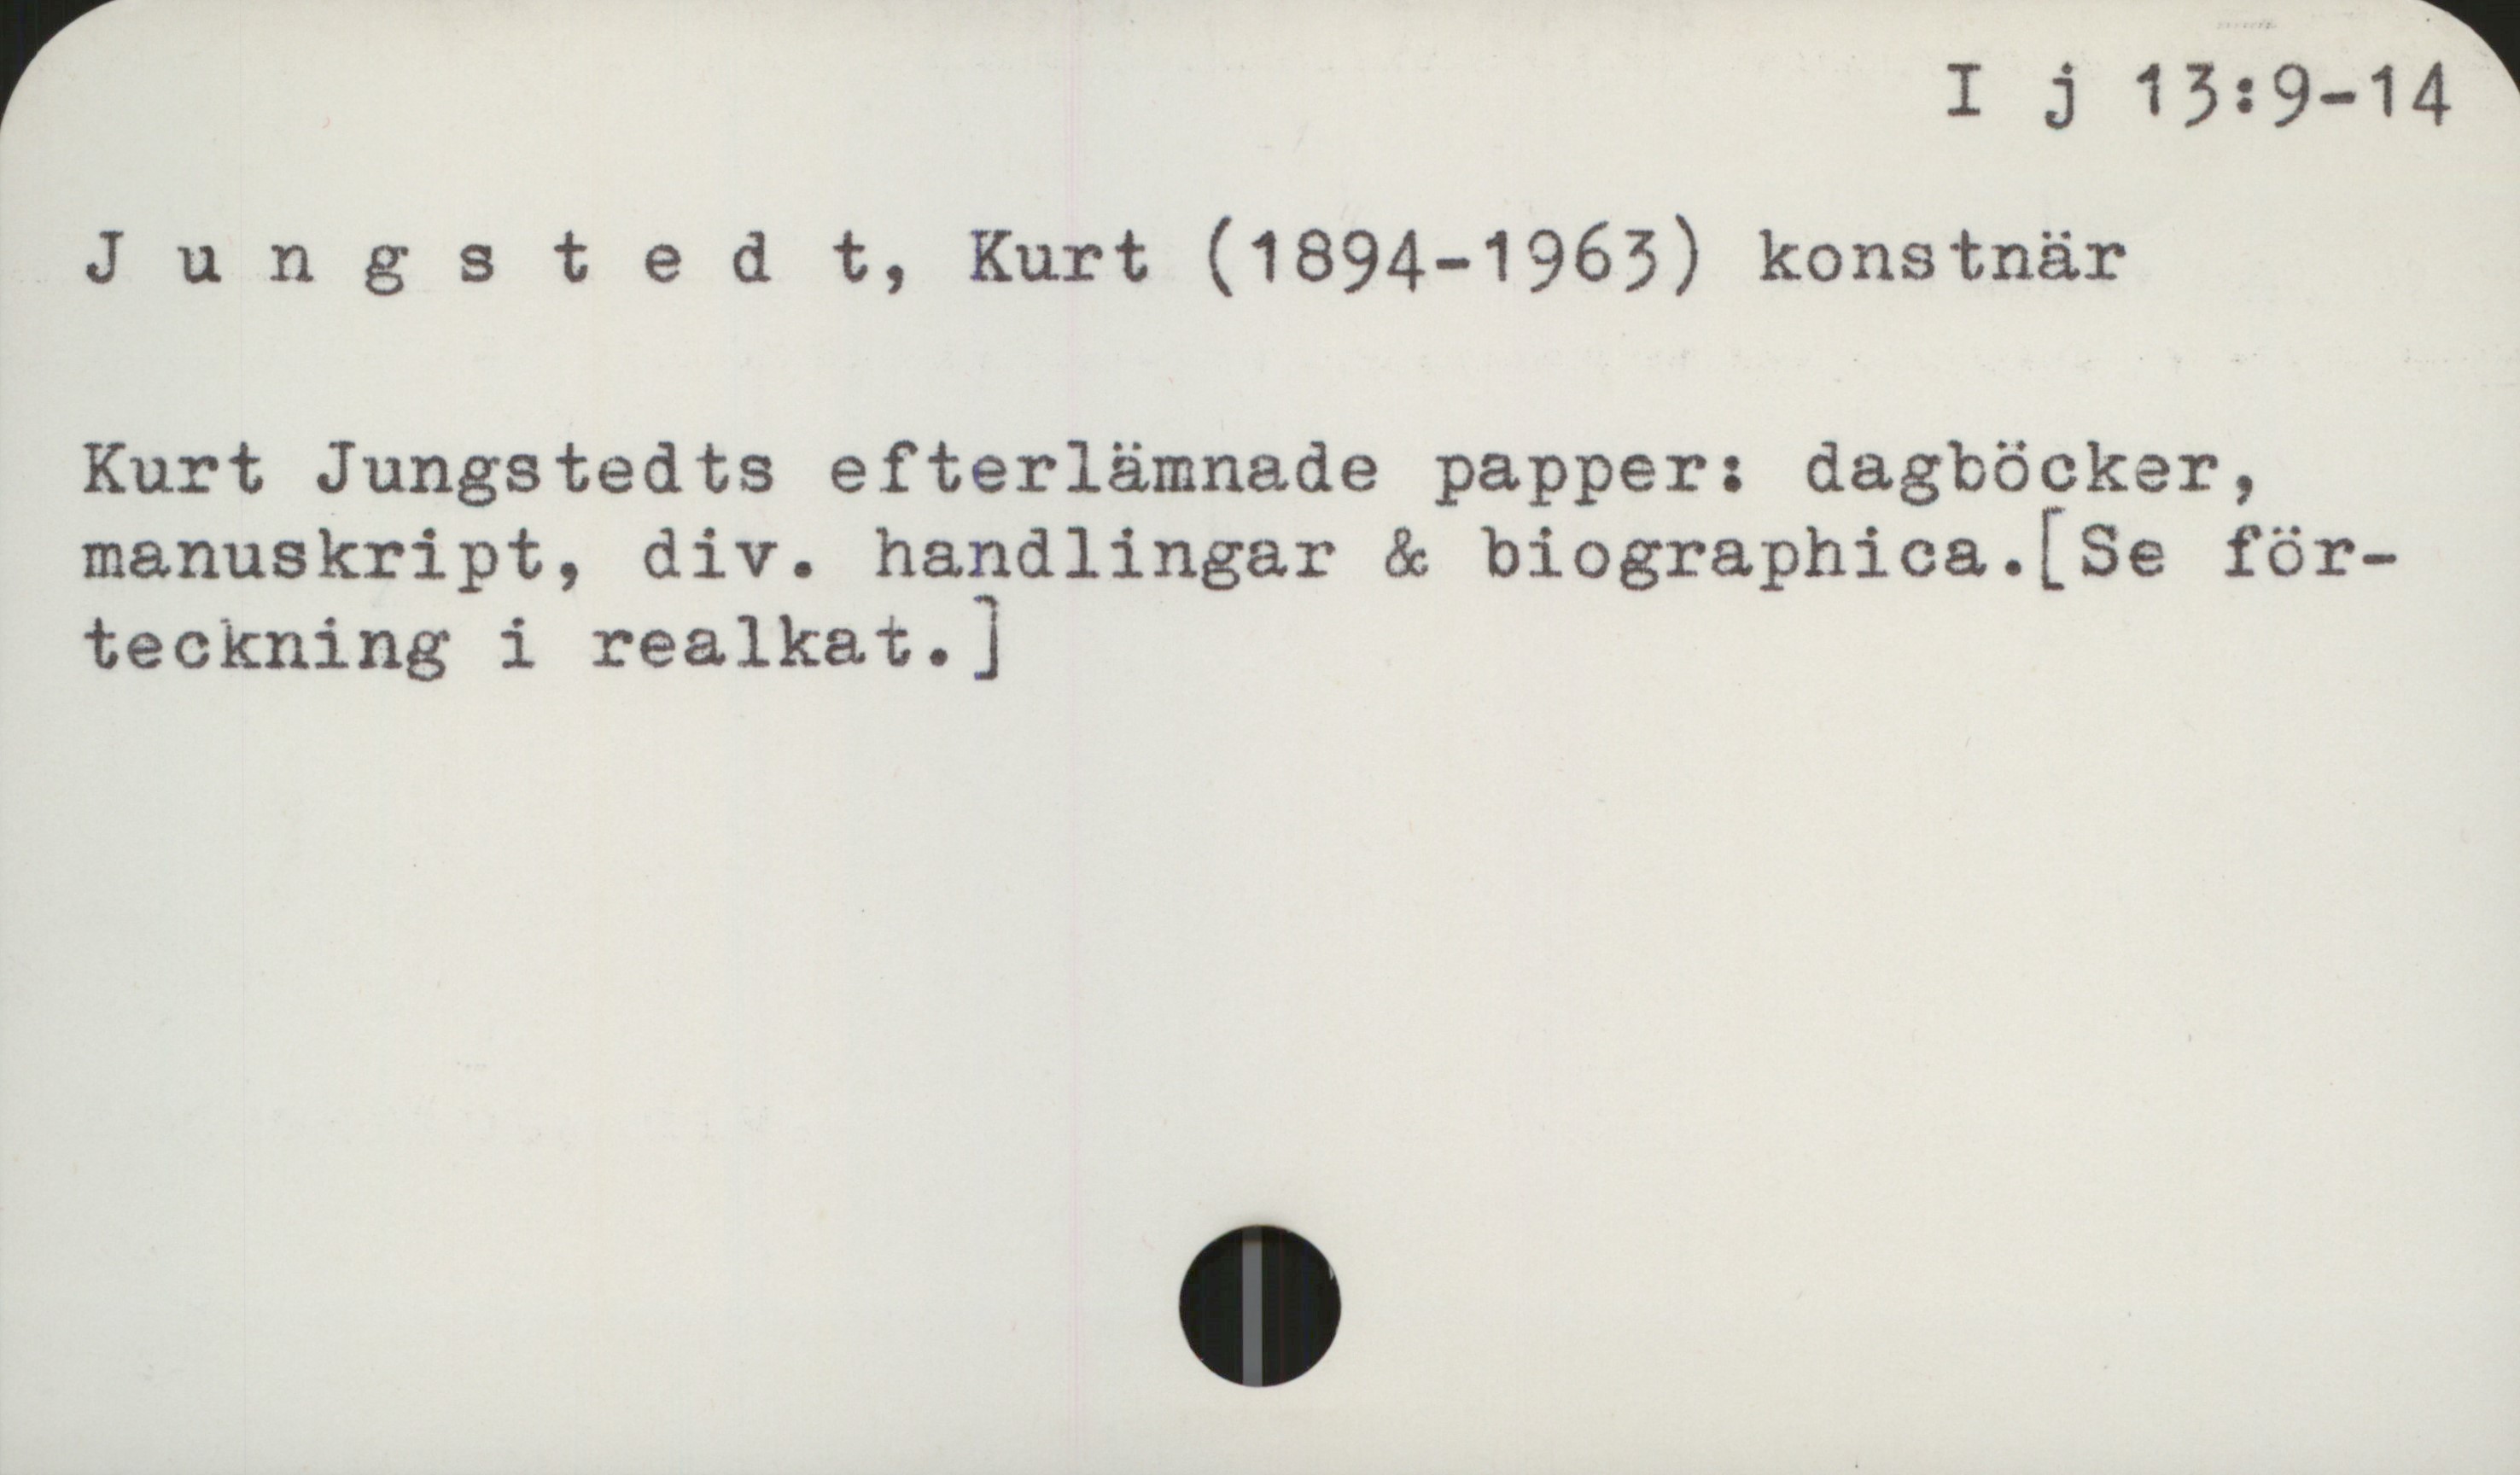 Jungstedt, Kurt (1894-1963) I j 13: 9-14

Jungstedt, Kurt (1894-1963) konstnär

Kurt Jungstedts efterlämnade papper: dagböcker,
manuskript, div. handlingar & biographica. 
          [Se förteckning i realkat.]